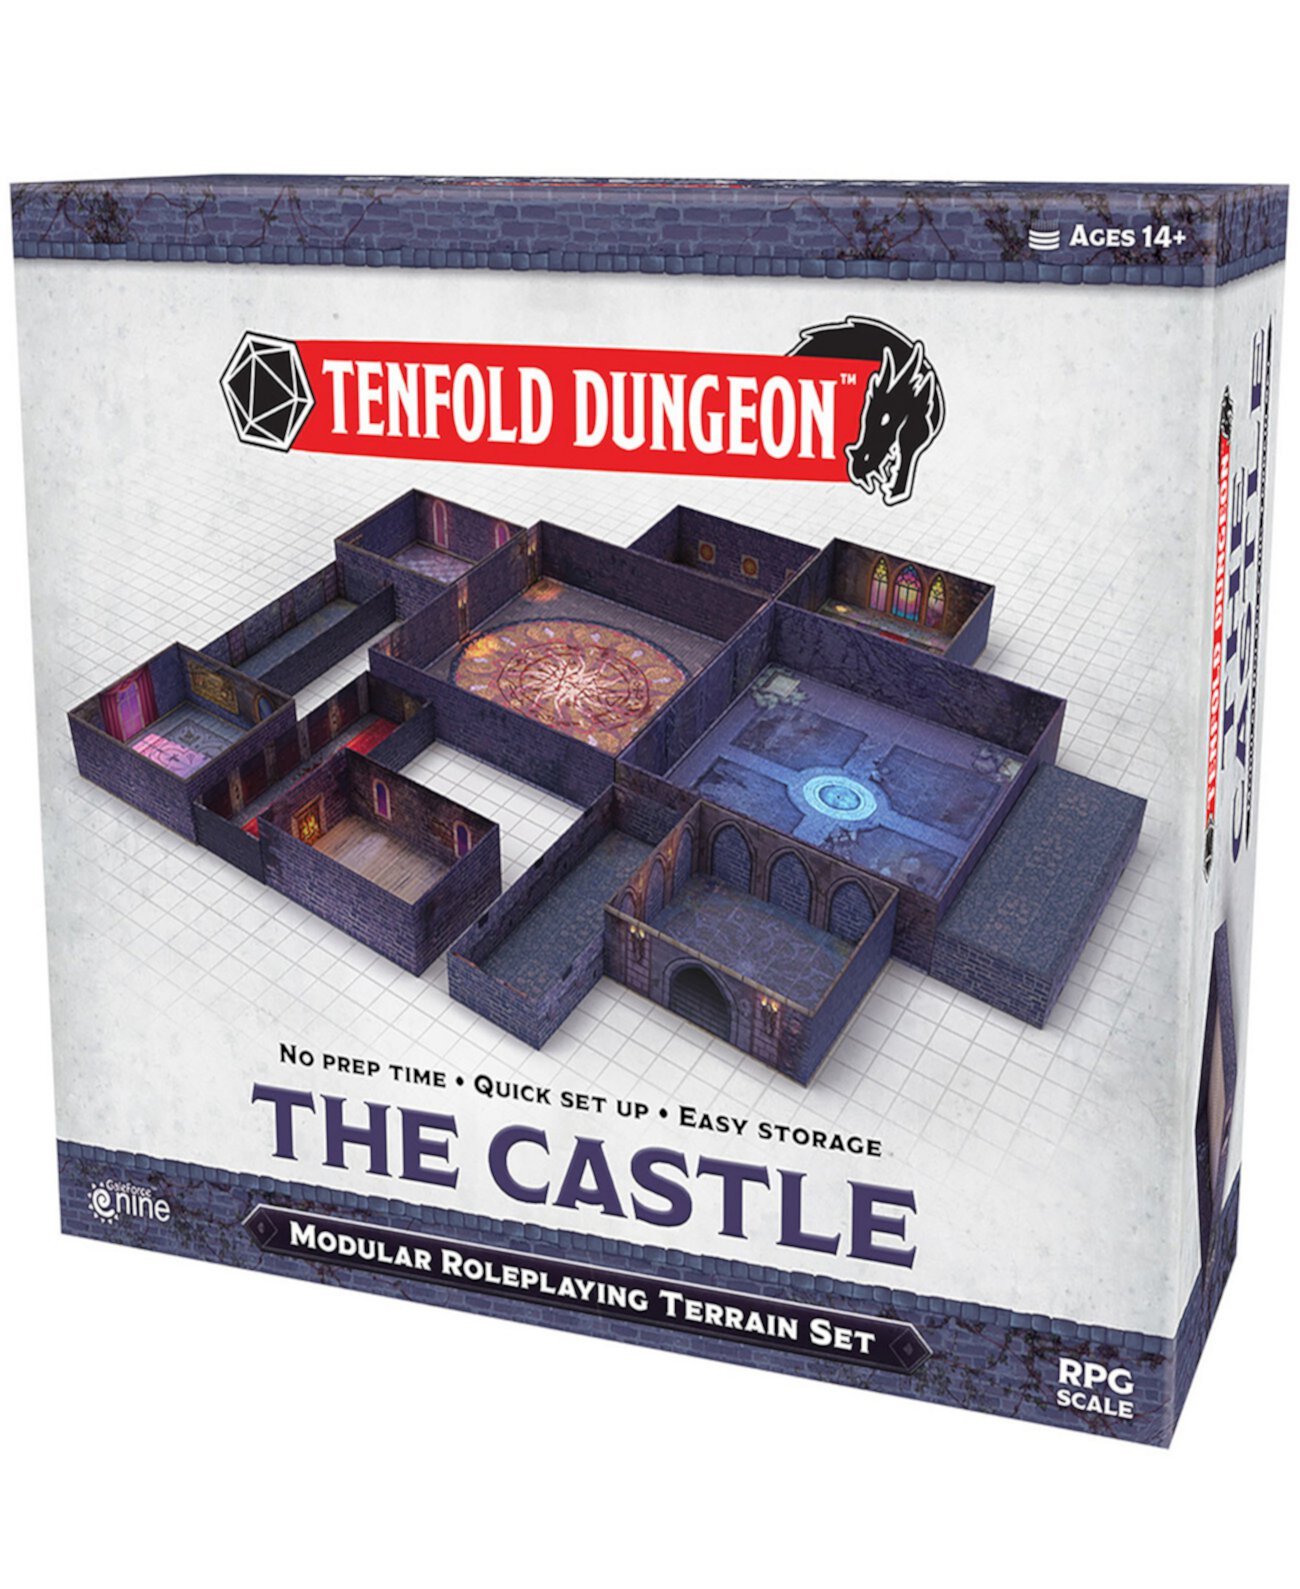 Tenfold Dungeons the Castle Модульная ролевая игра Terrain 5 Piece Set 5e Ролевая игра Adventure Gale Force 9 Gale Force Nine